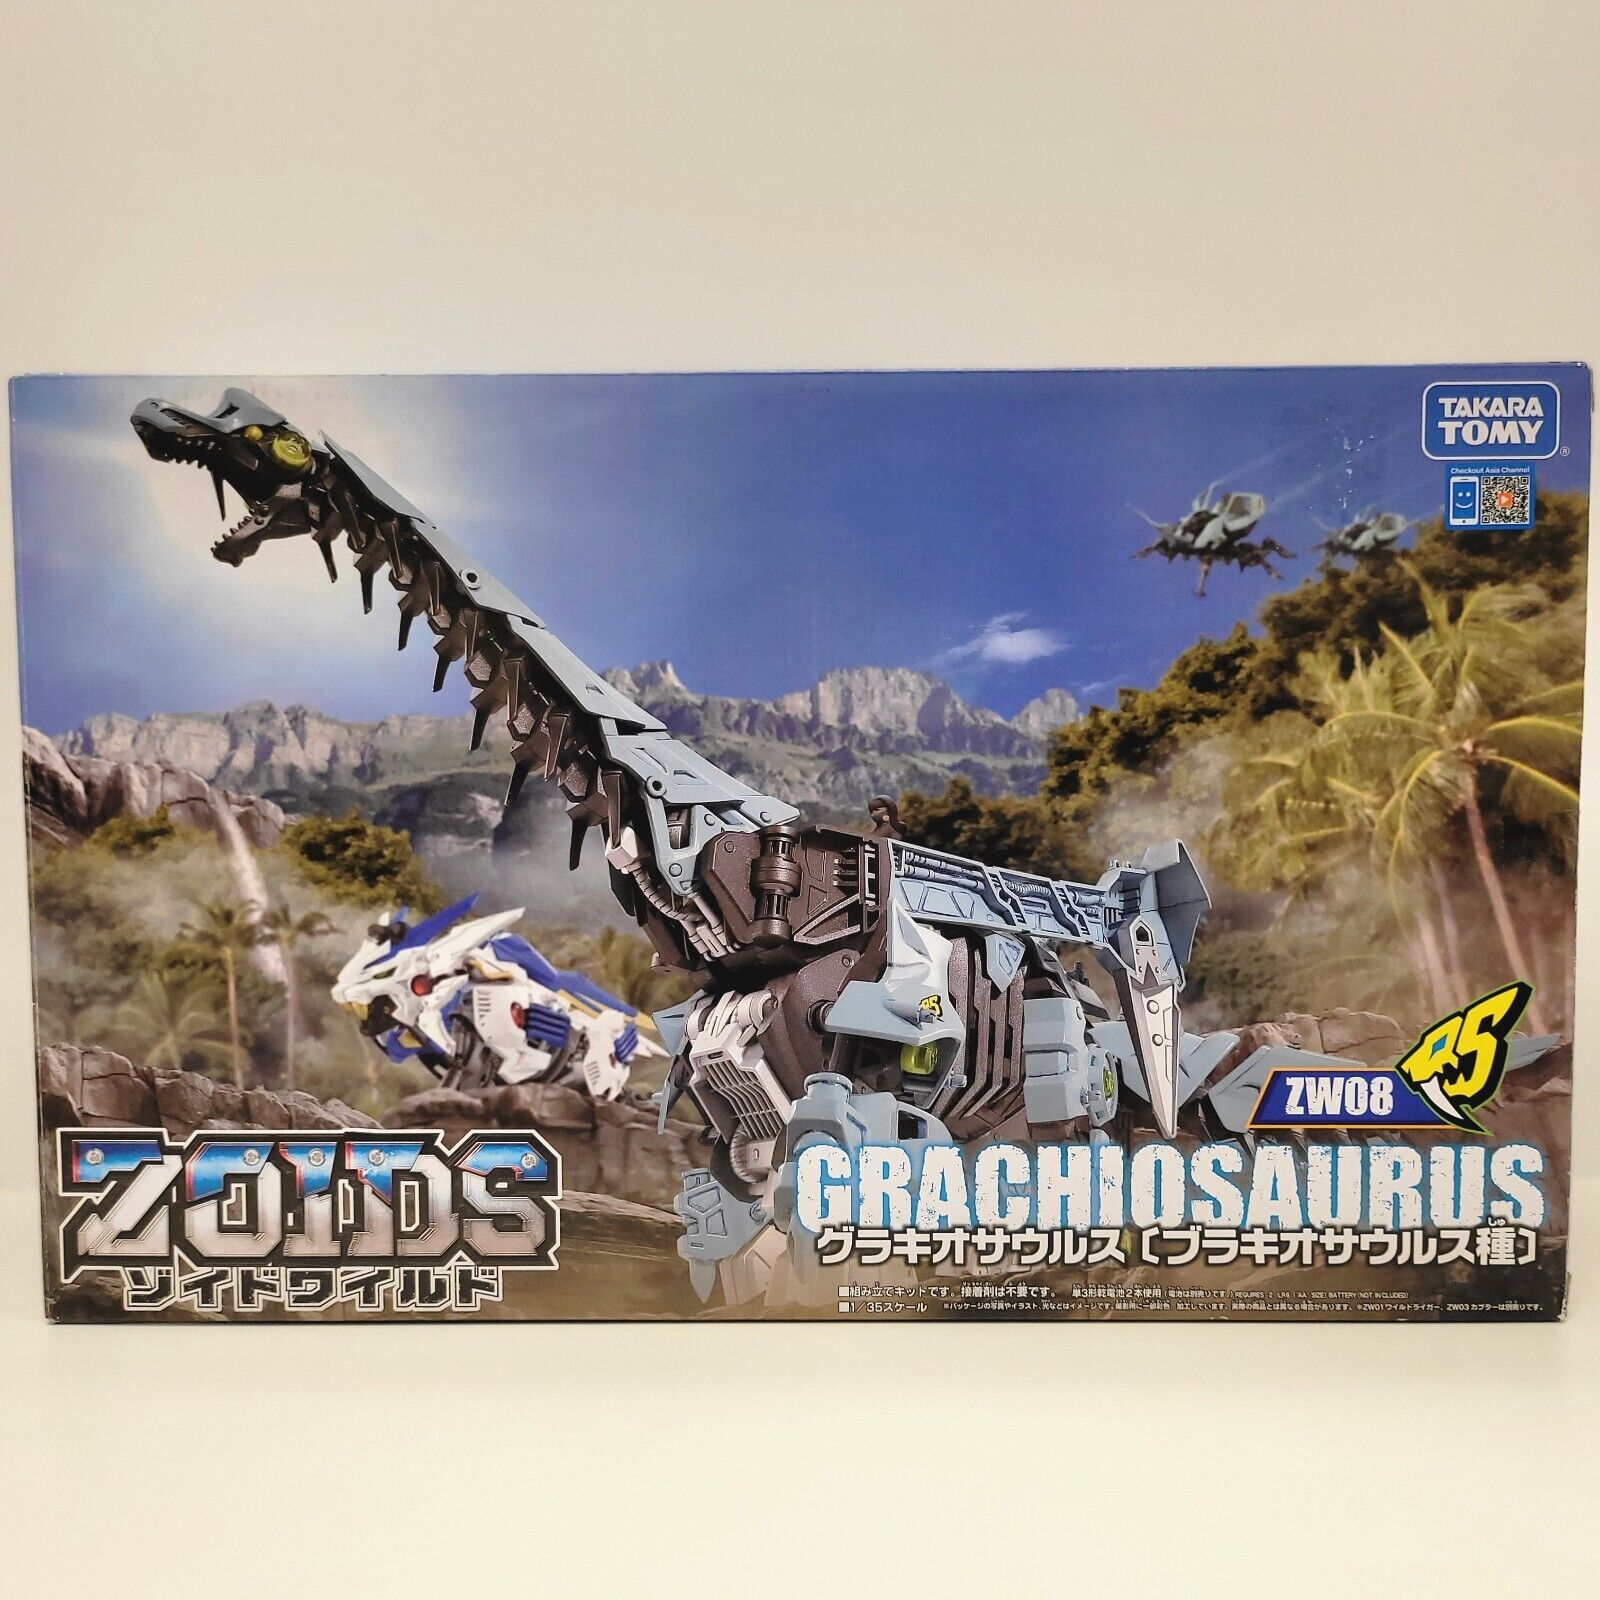 Zoids Wild ZW08 Grachiosaurus Motorized Plastic Model Kit by Takara Tomy